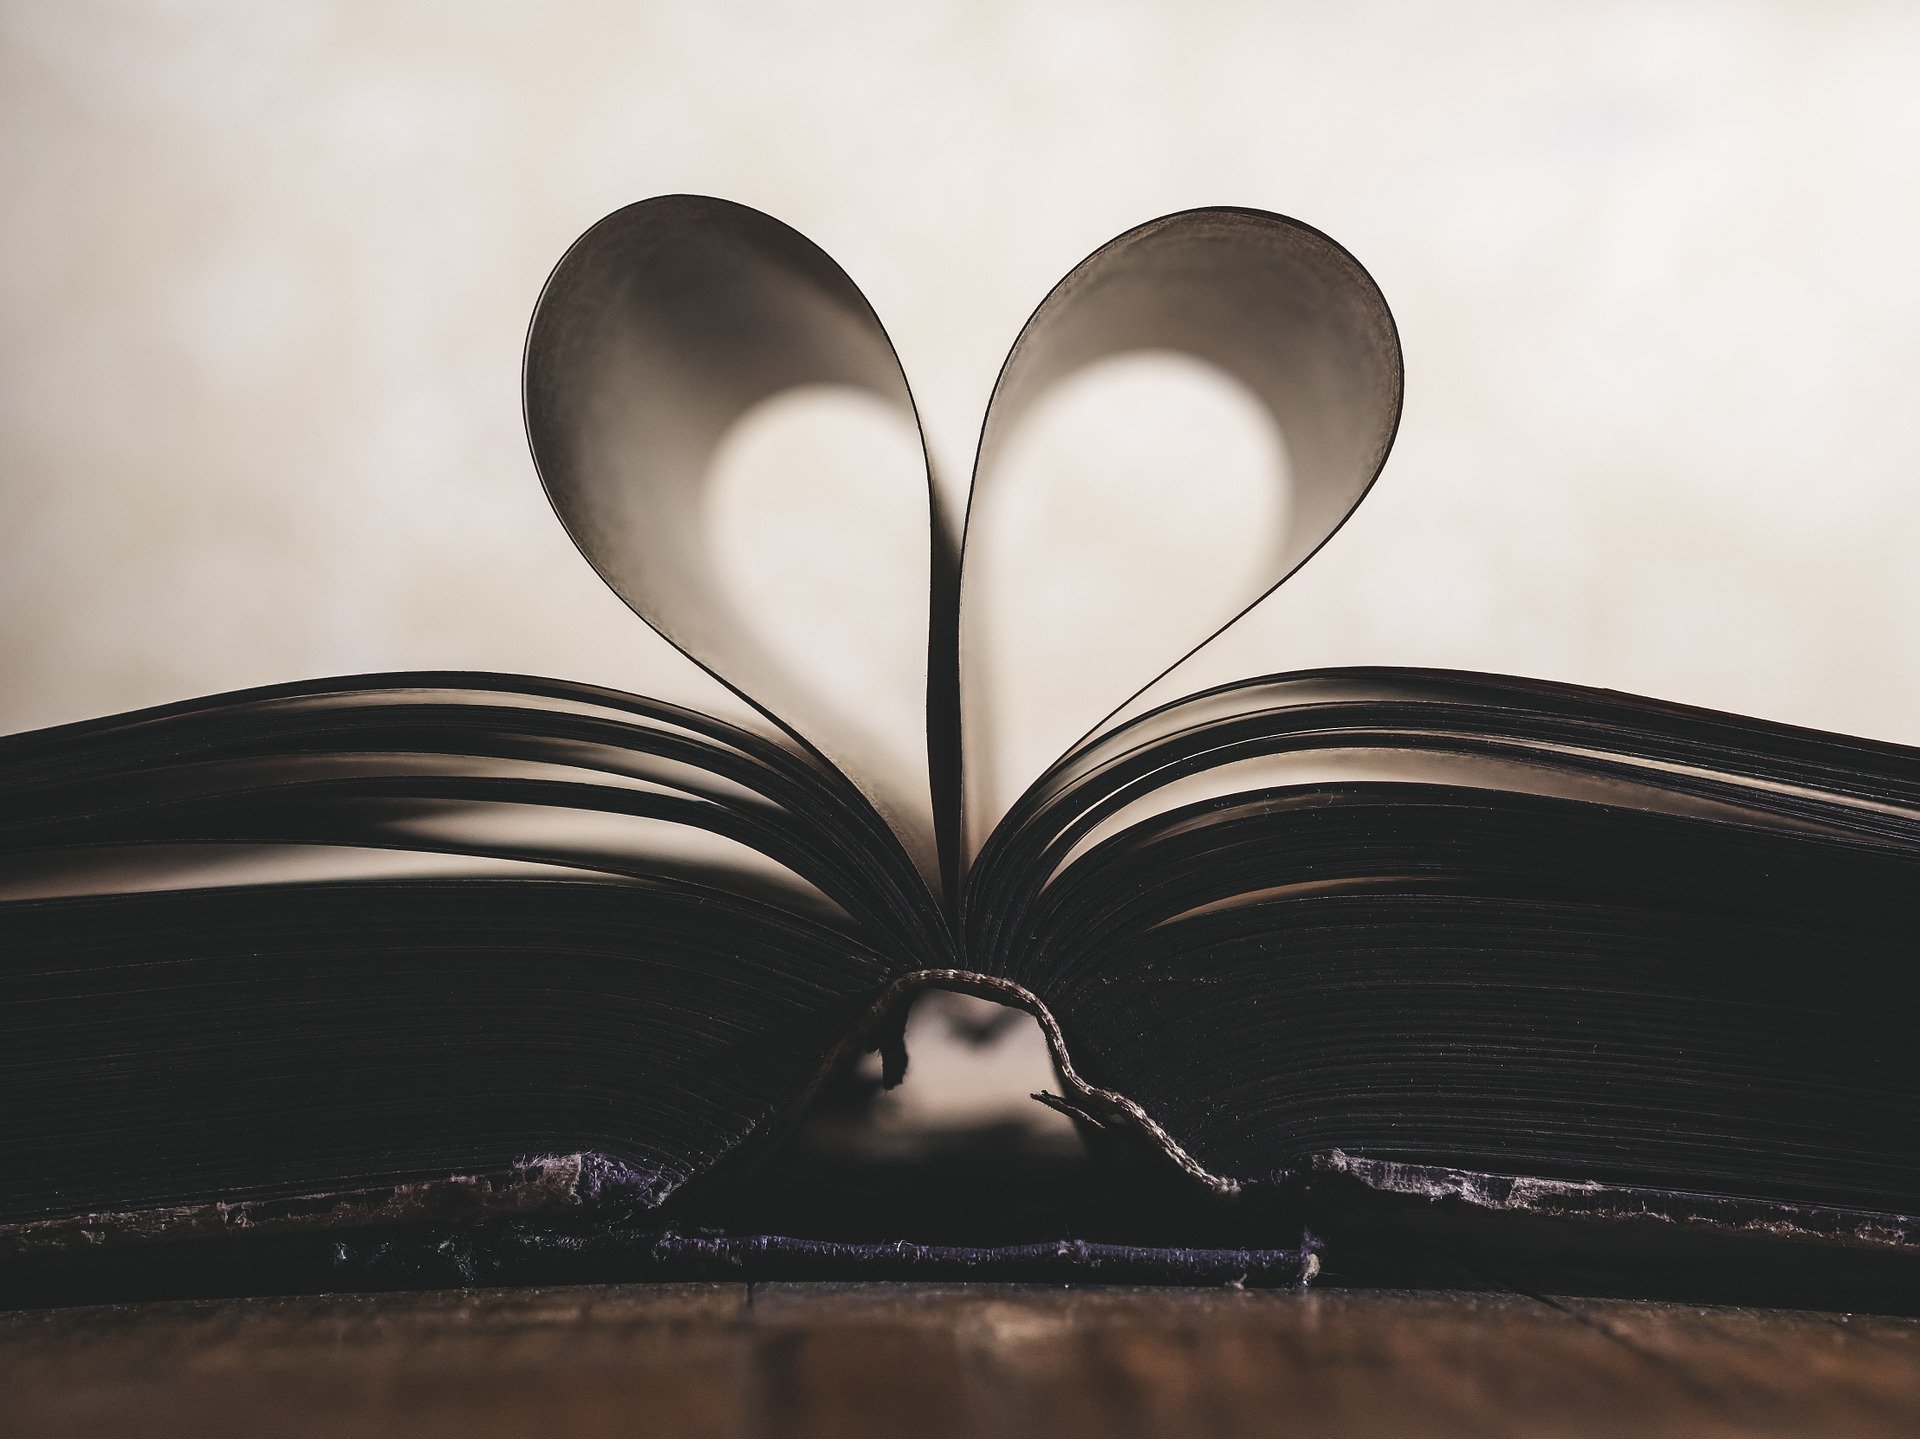 Livro aberto com páginas formando coração